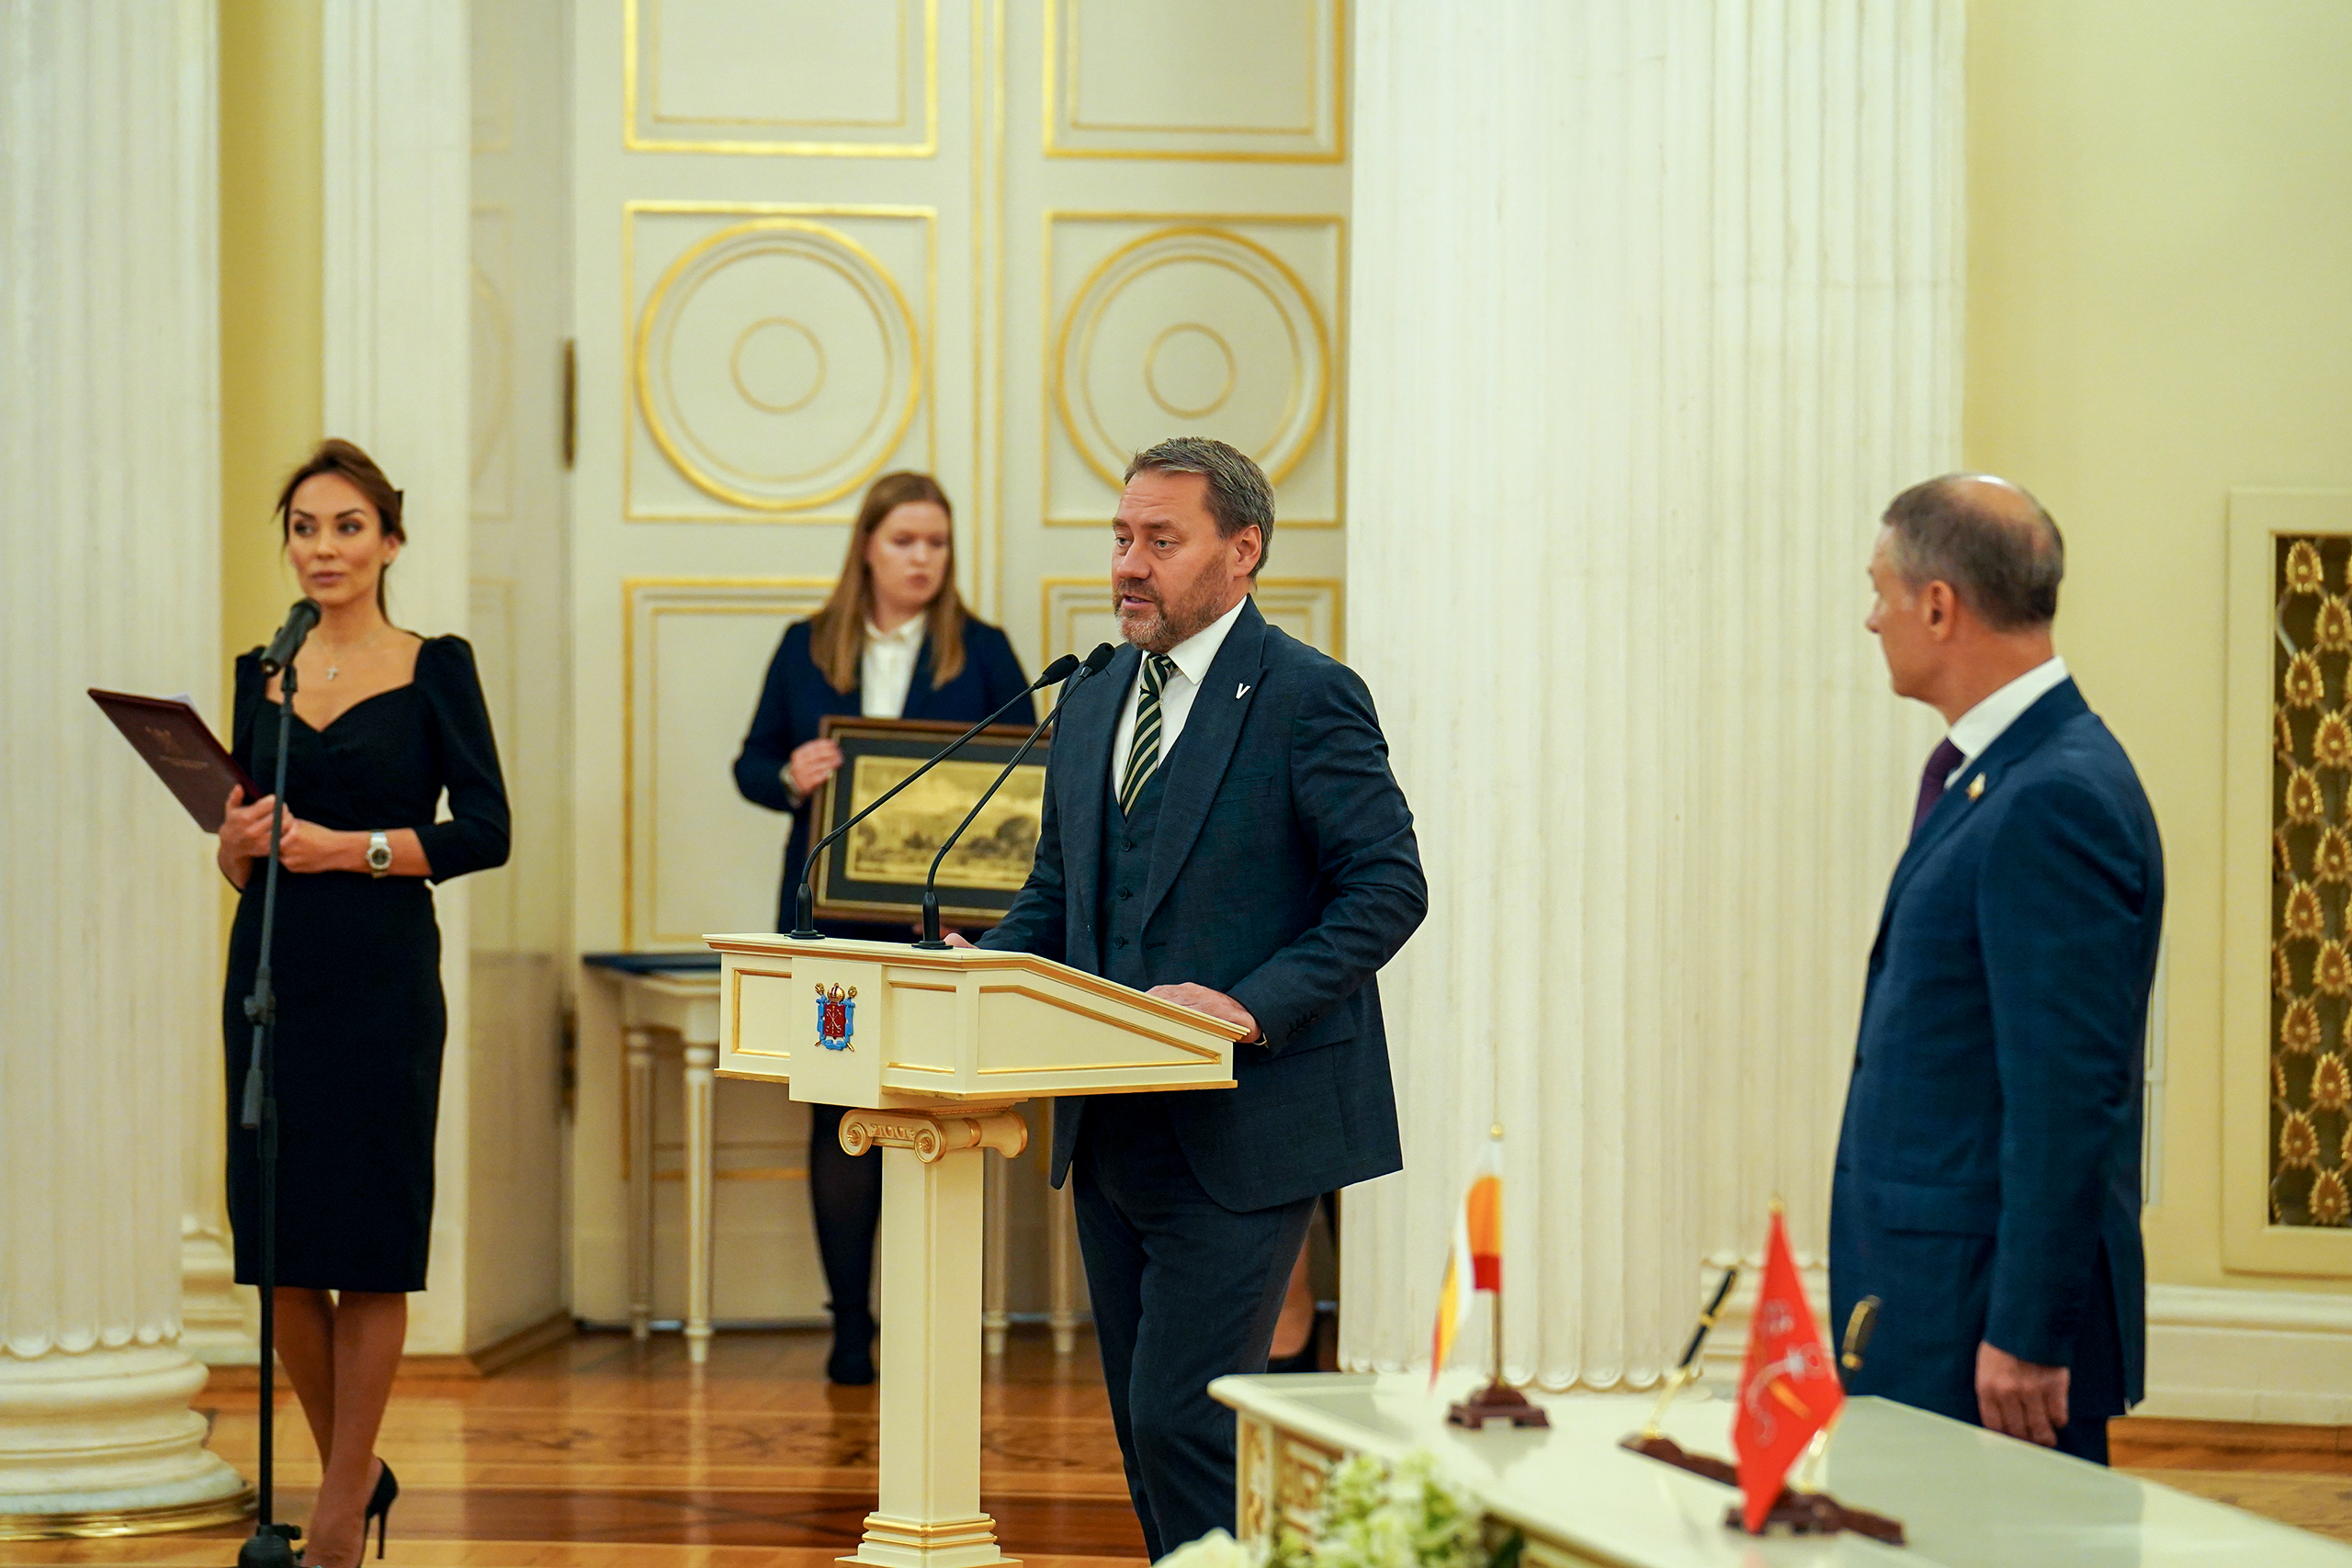 Петербургский парламент и Рязанская областная Дума подписали соглашение о сотрудничестве